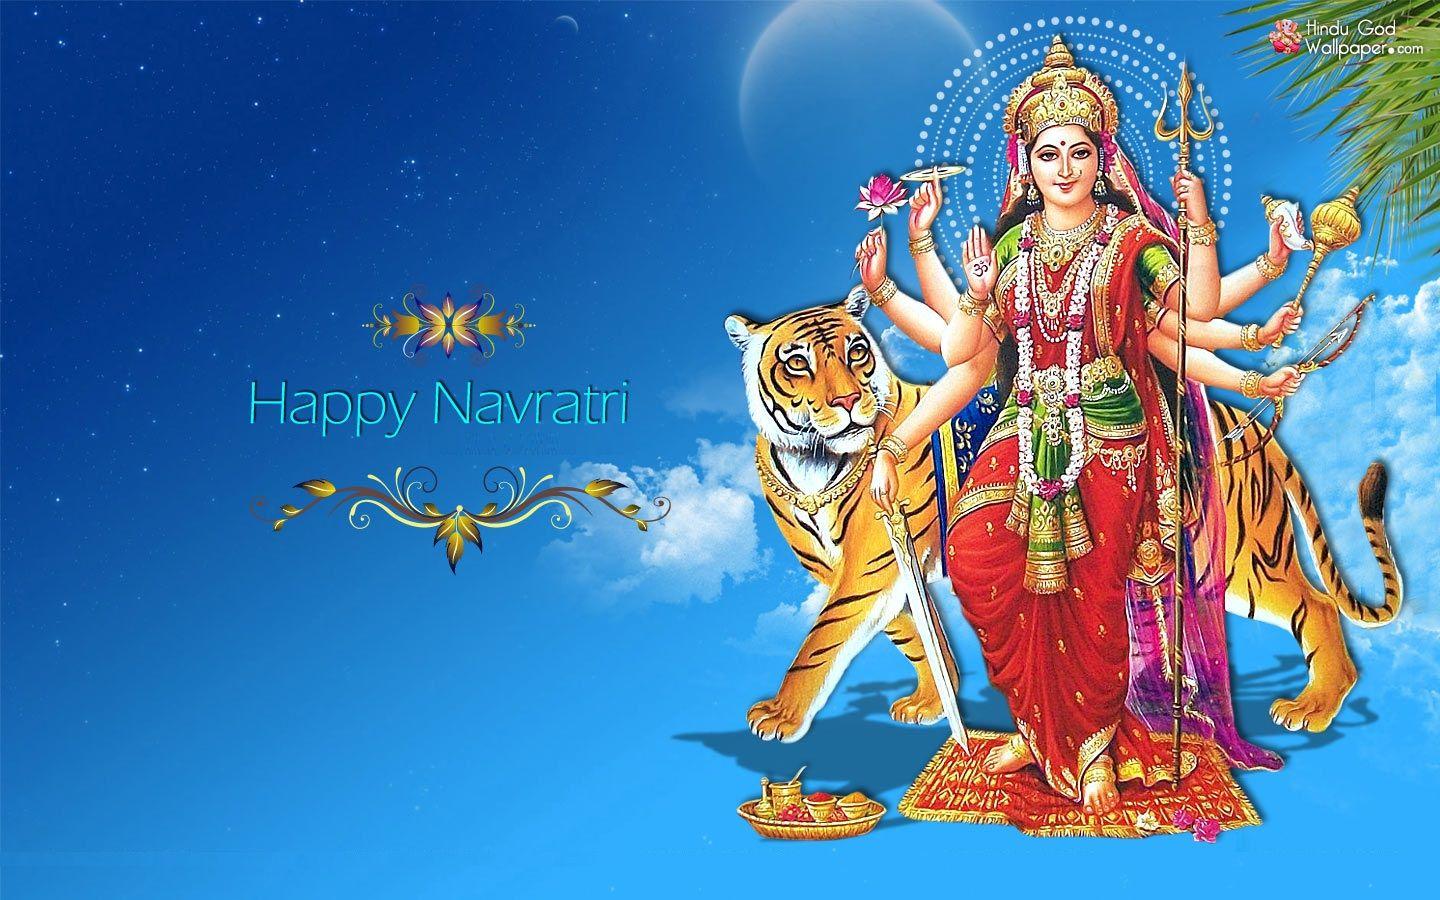 Navratri Maa Durga HD Image, Wallpaper, and Photo (Free Download)